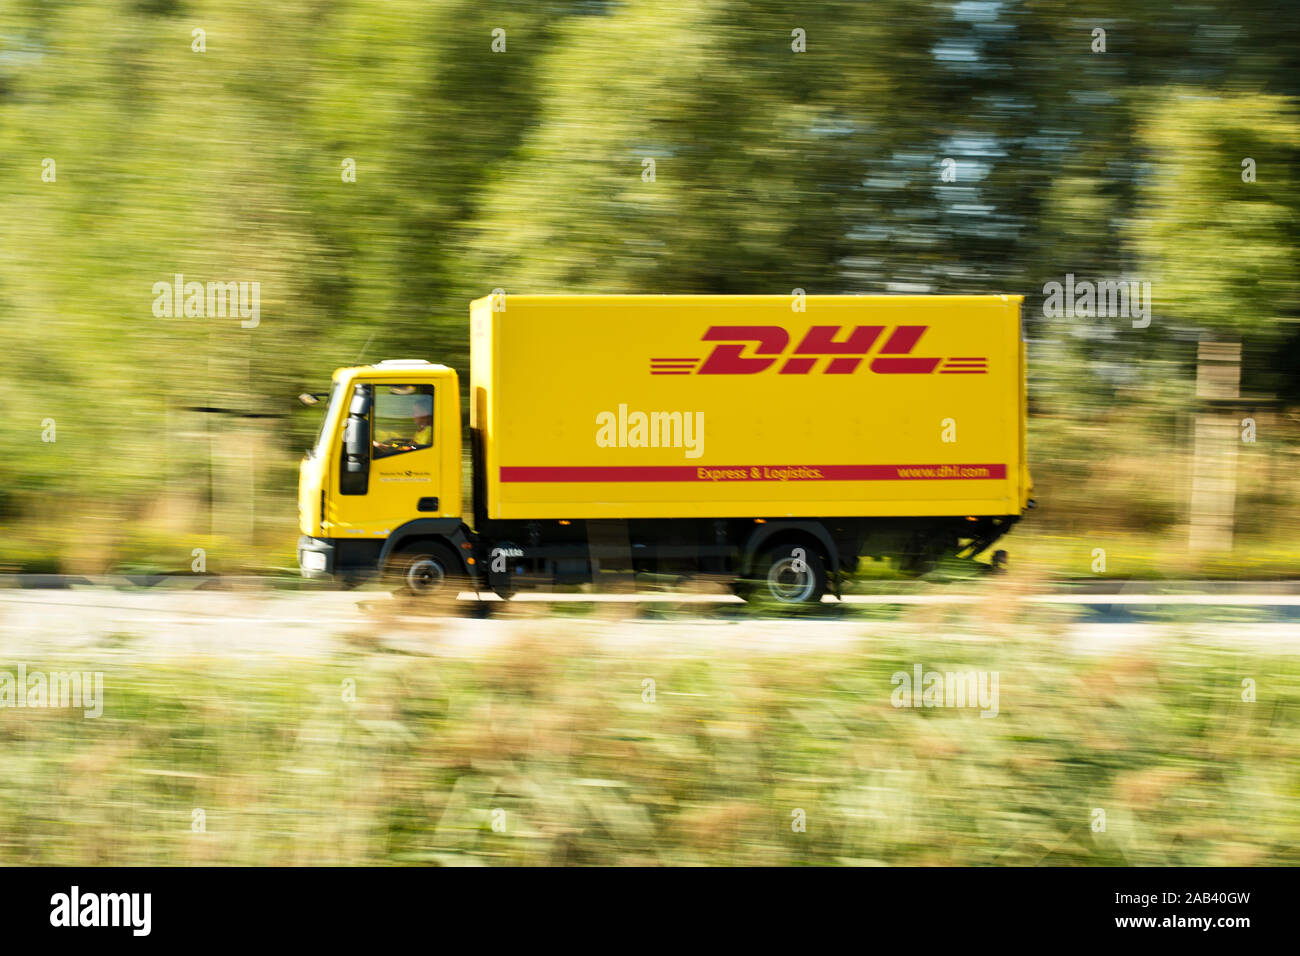 Lastkraftwagen von DHL auf dem Weg ins Logistikzentrum |DHL lorry on the way to the logistics center| Stock Photo